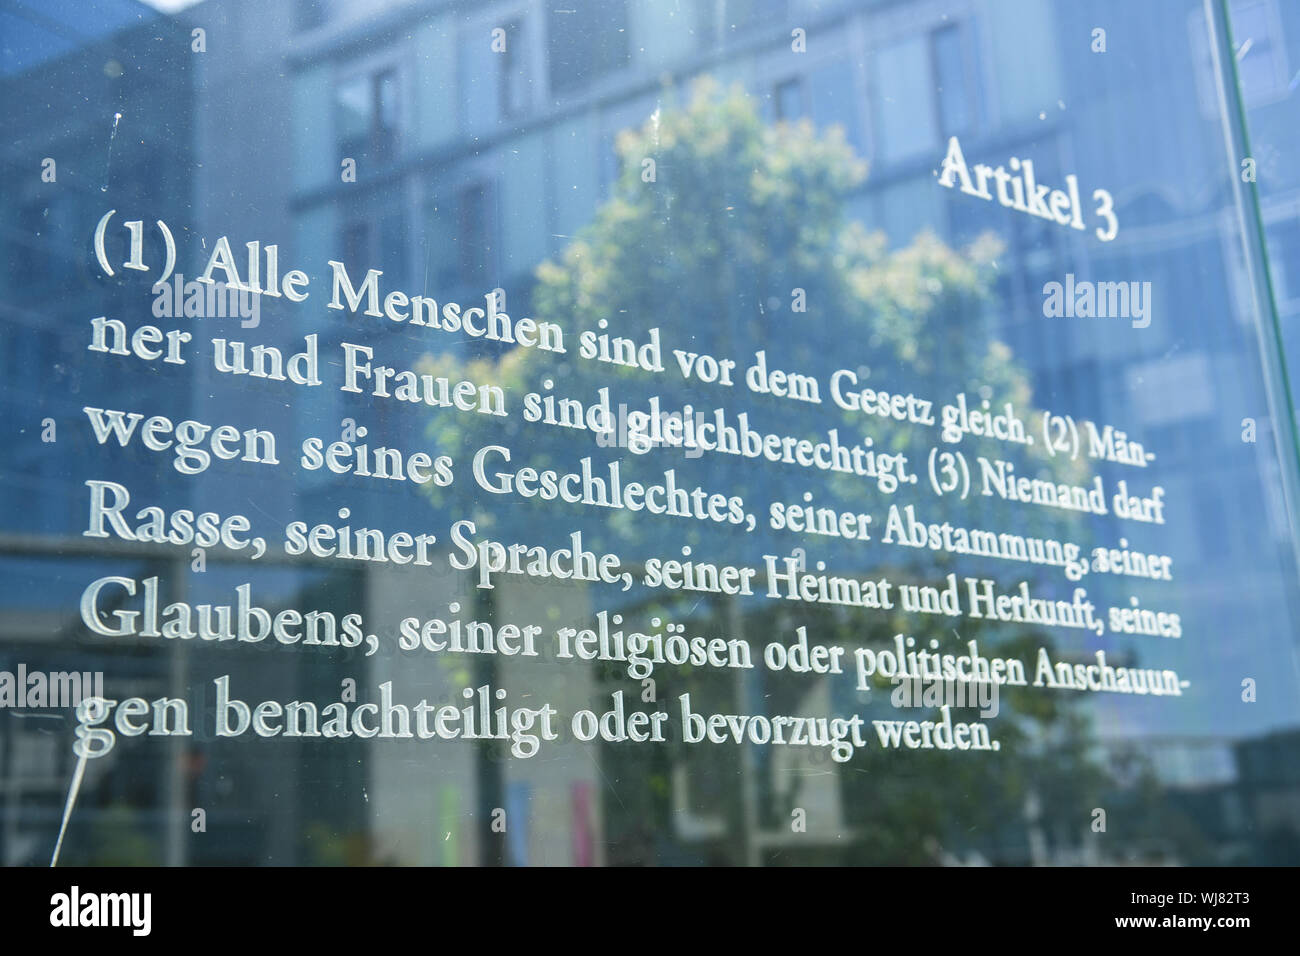 Artículo 3, Berlín, el Bundestag, Dani Karavan, Alemania, cristal, cristal, vidrio, pared de cristal, igualdad de derechos, la igualdad, la ley básica, básica Foto de stock